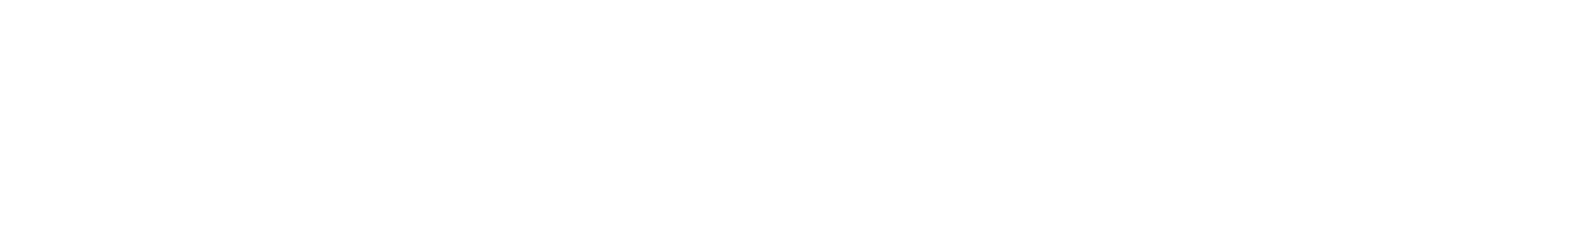 Lakeland Bancorp logo large for dark backgrounds (transparent PNG)